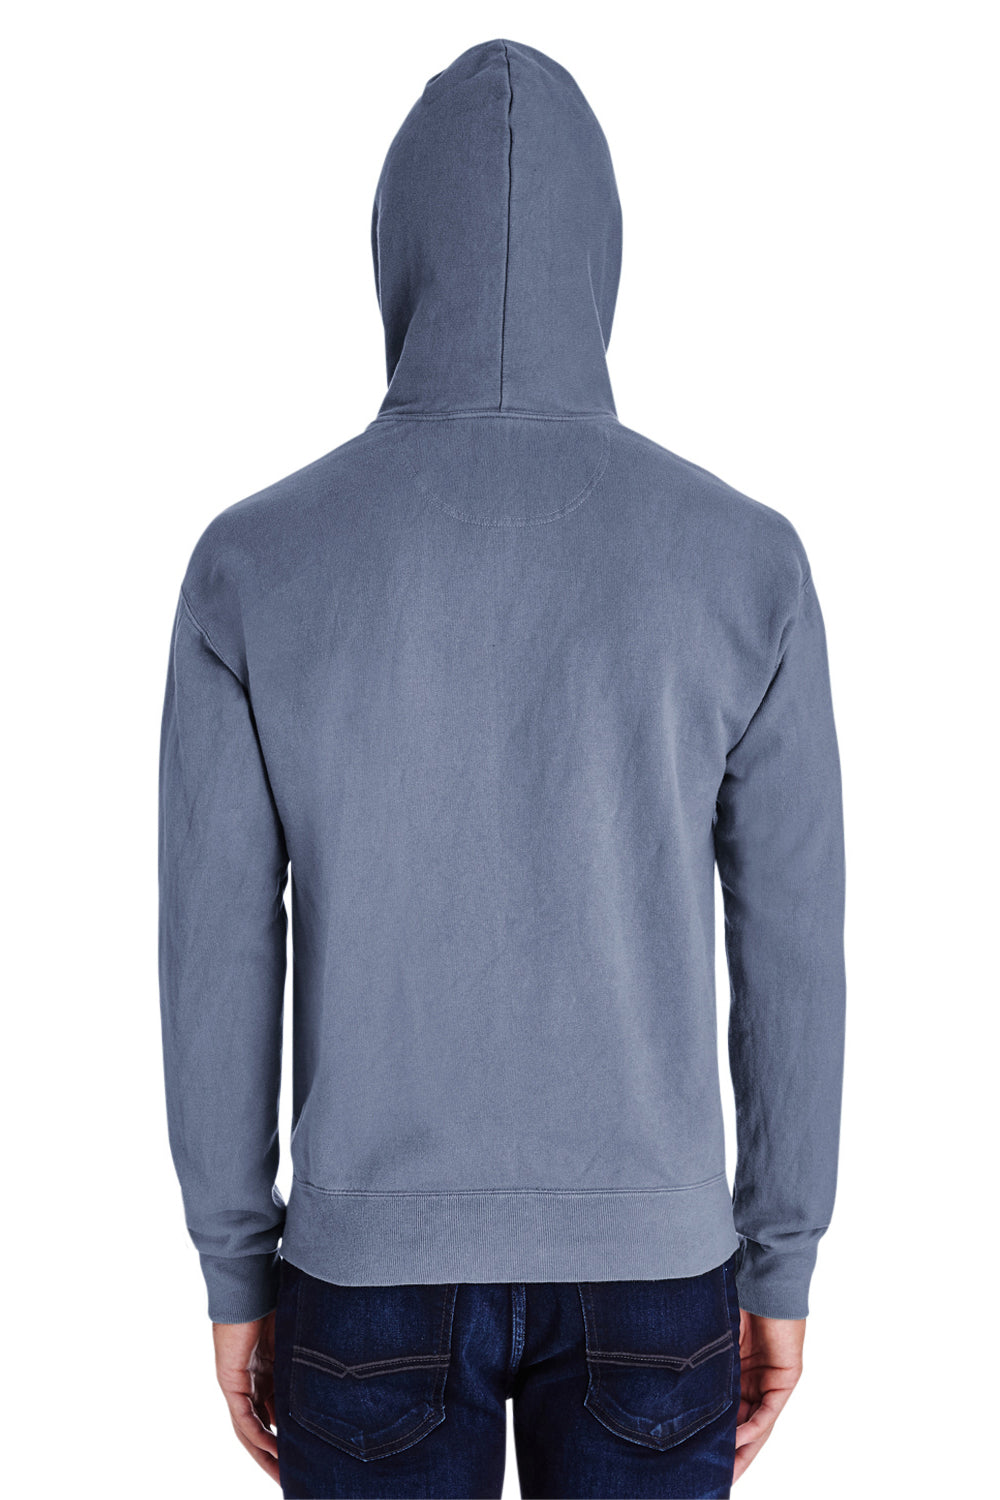 ComfortWash by Hanes GDH450 Hooded Sweatshirt Hoodie Saltwater Blue Back